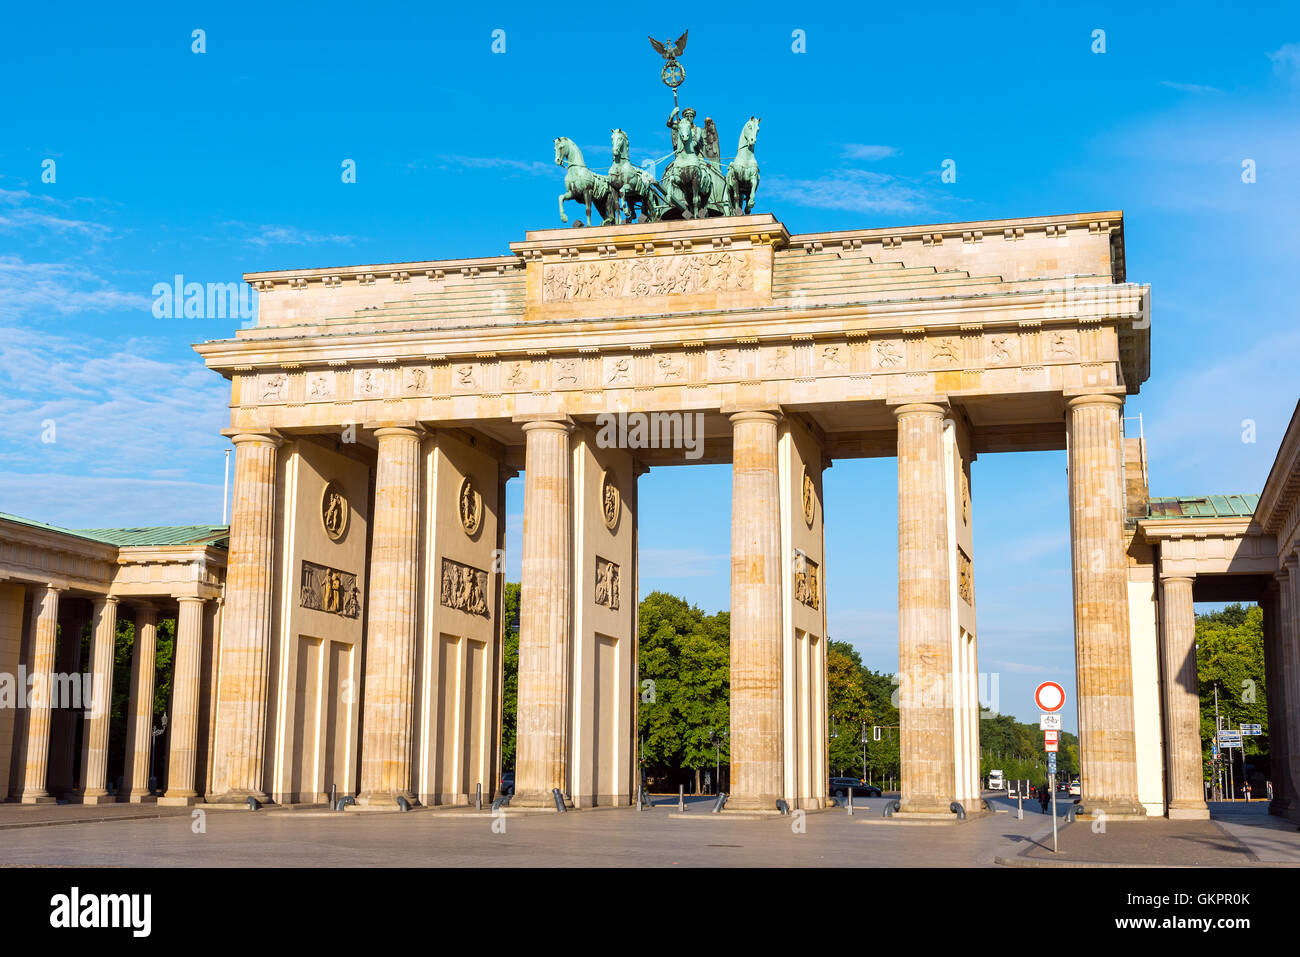 La famosa Puerta de Brandenburgo, el monumento más visitado de Berlín Foto de stock